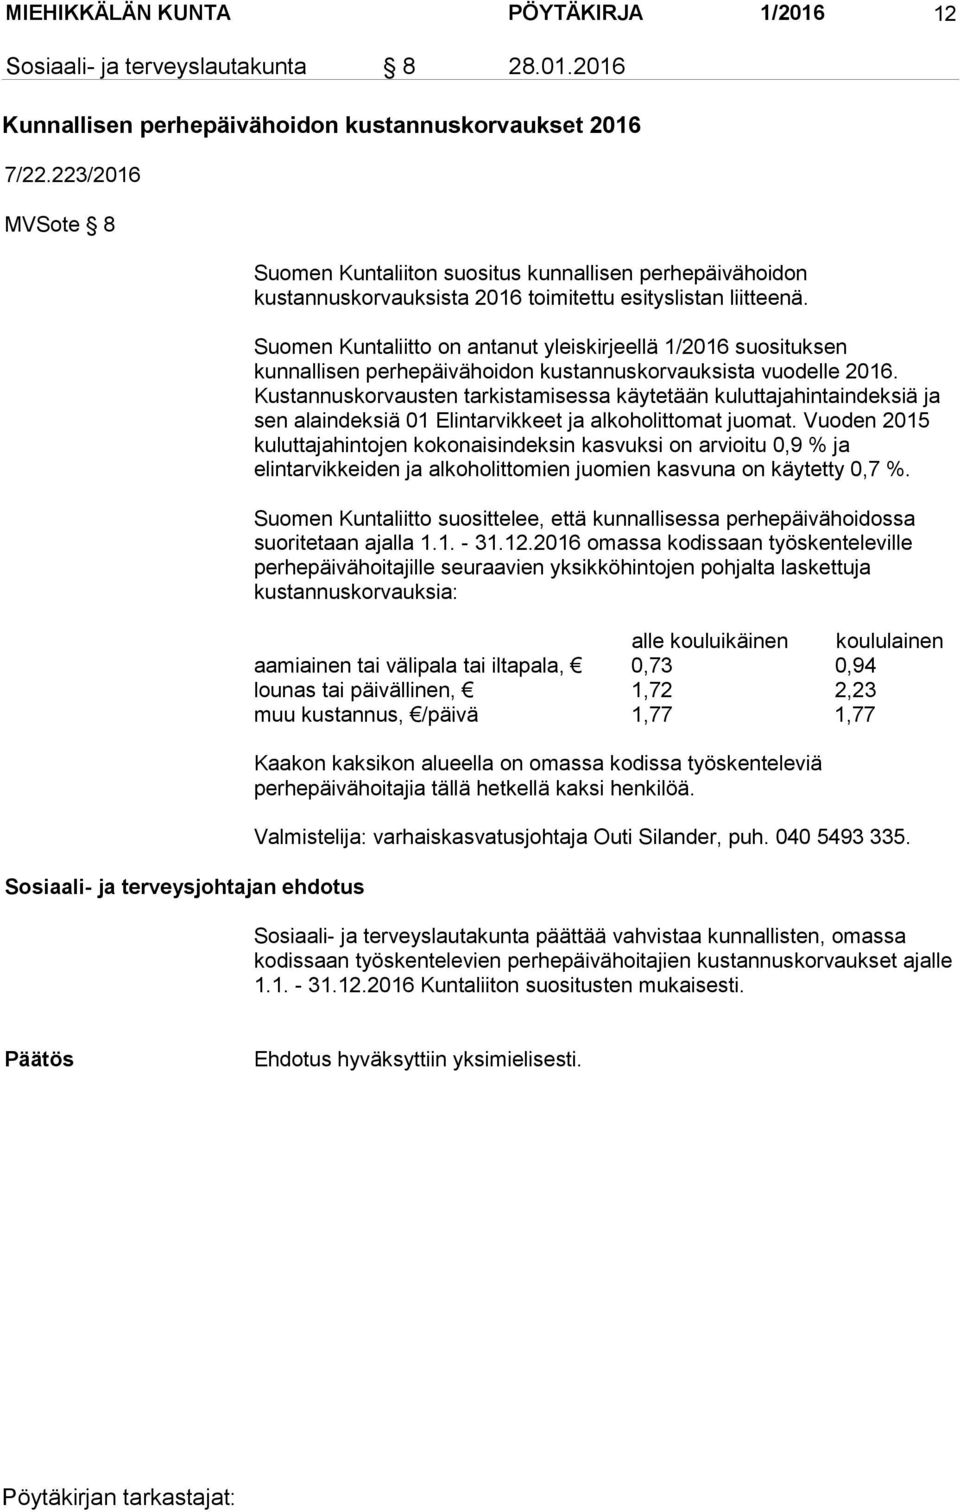 Suomen Kuntaliitto on antanut yleiskirjeellä 1/2016 suosituksen kunnallisen perhepäivähoidon kustannuskorvauksista vuodelle 2016.